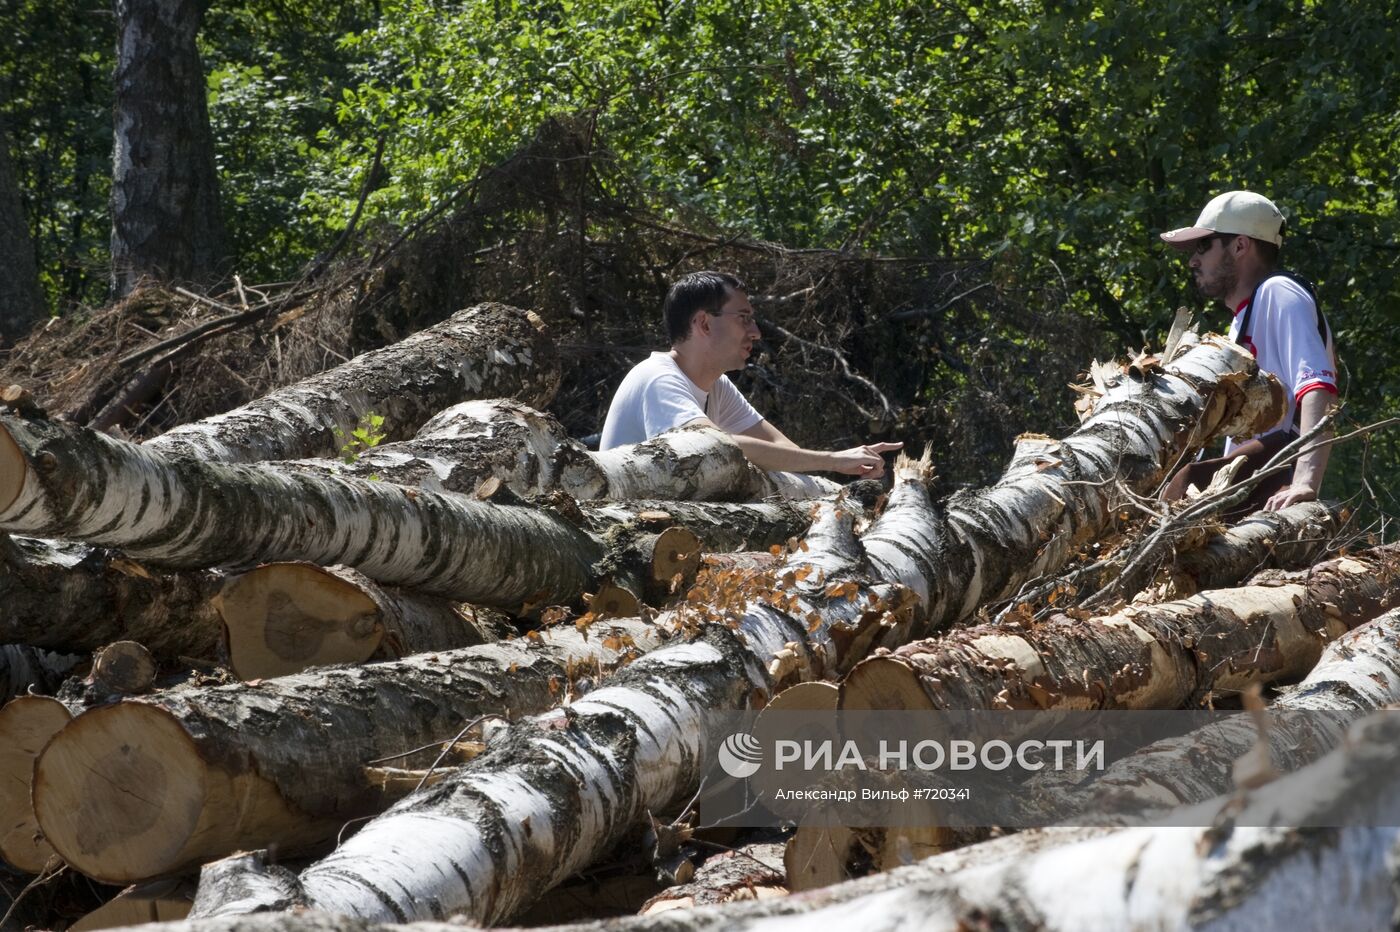 Вырубка Химкинского леса началась со стороны "Шереметьево"